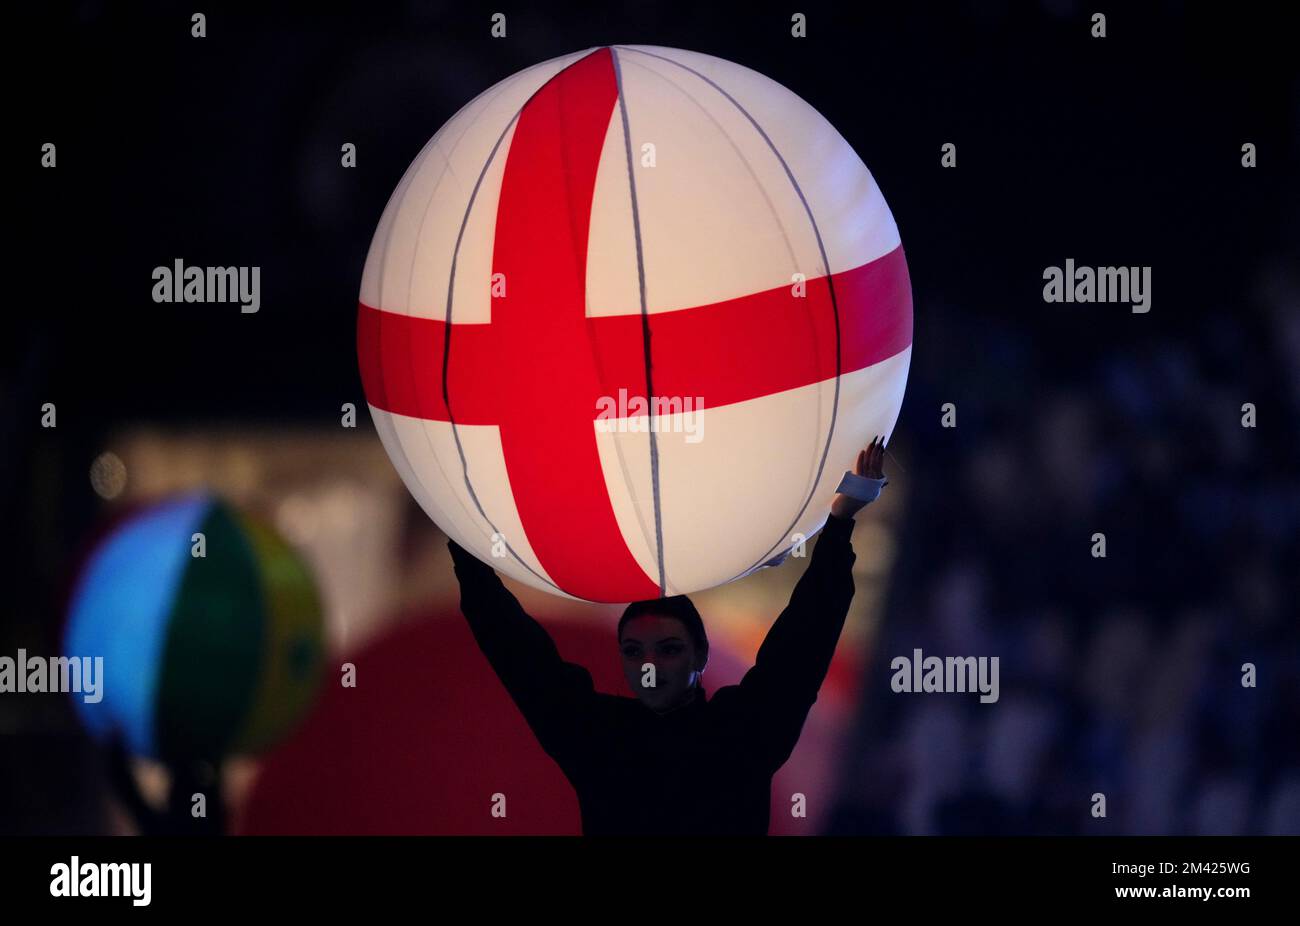 Une vue générale de l'Angleterre lors de la cérémonie de clôture précédant la finale de la coupe du monde de la FIFA au stade Lusail, Qatar. Date de la photo: Dimanche 18 décembre 2022. Banque D'Images